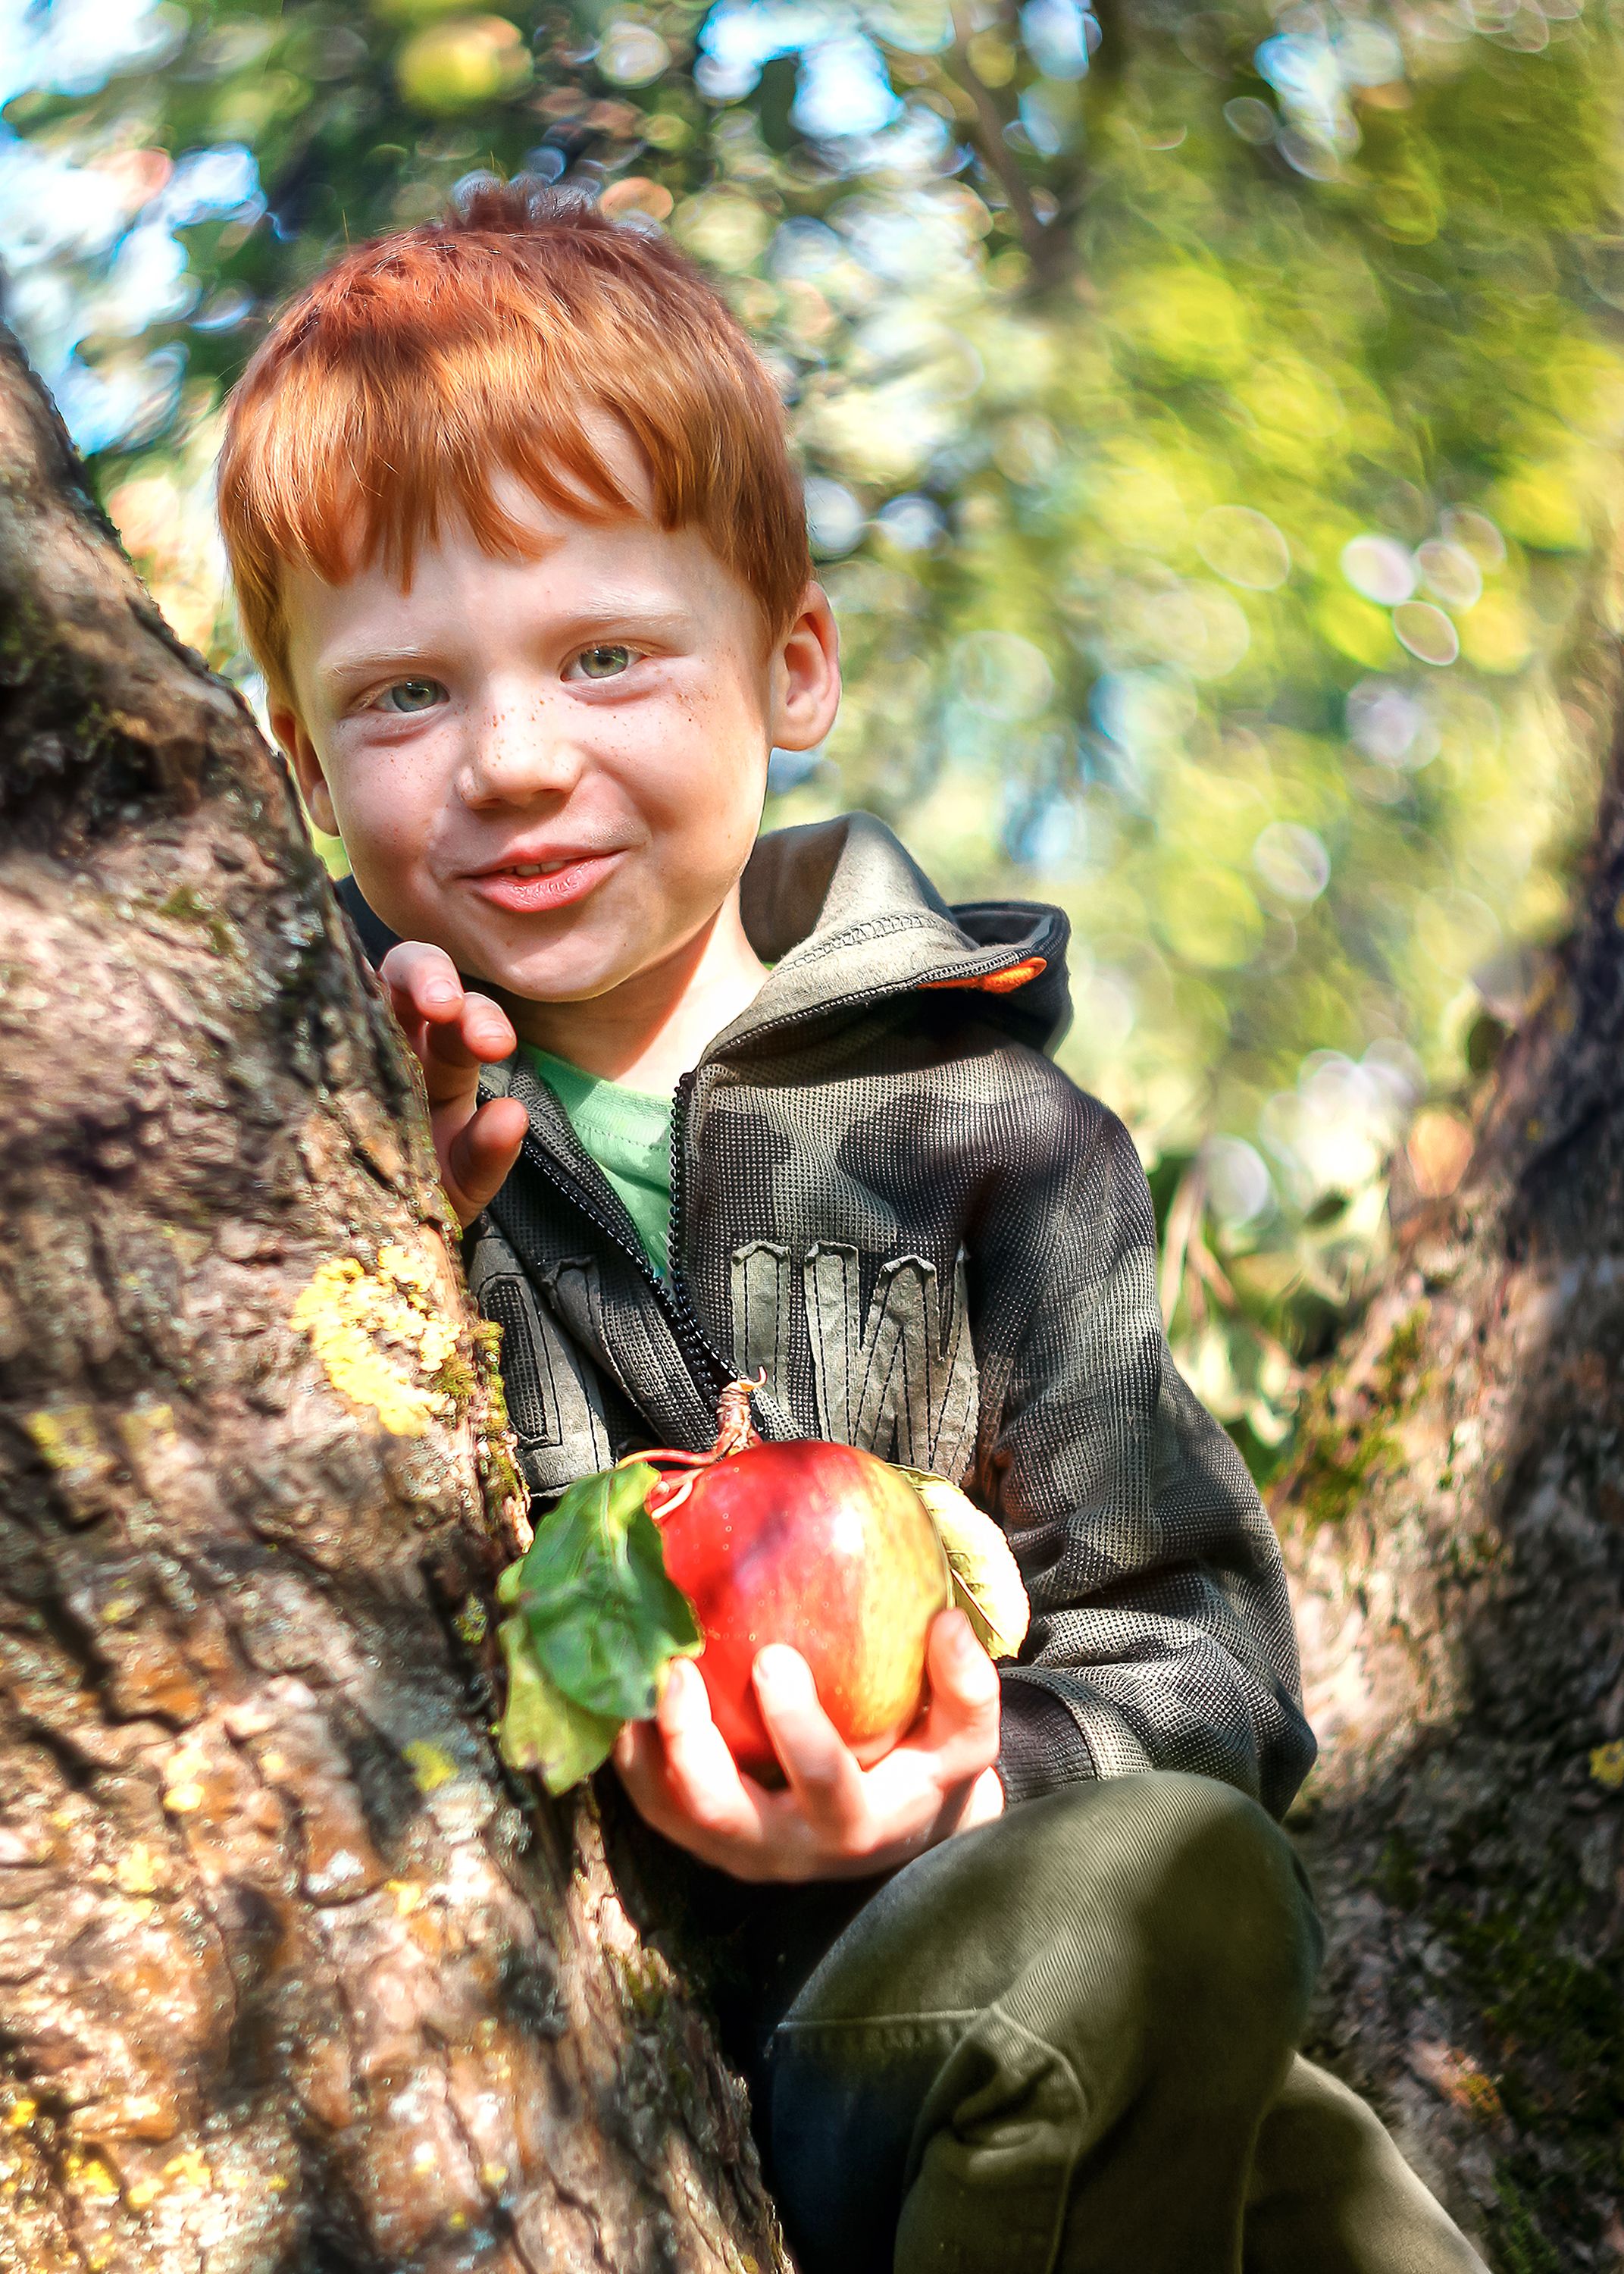 мальчишка- рыжик,конопатое счастье,наш двор, яблоко жизни,репортажное фото, ГОРЮКИНА ИРИНА